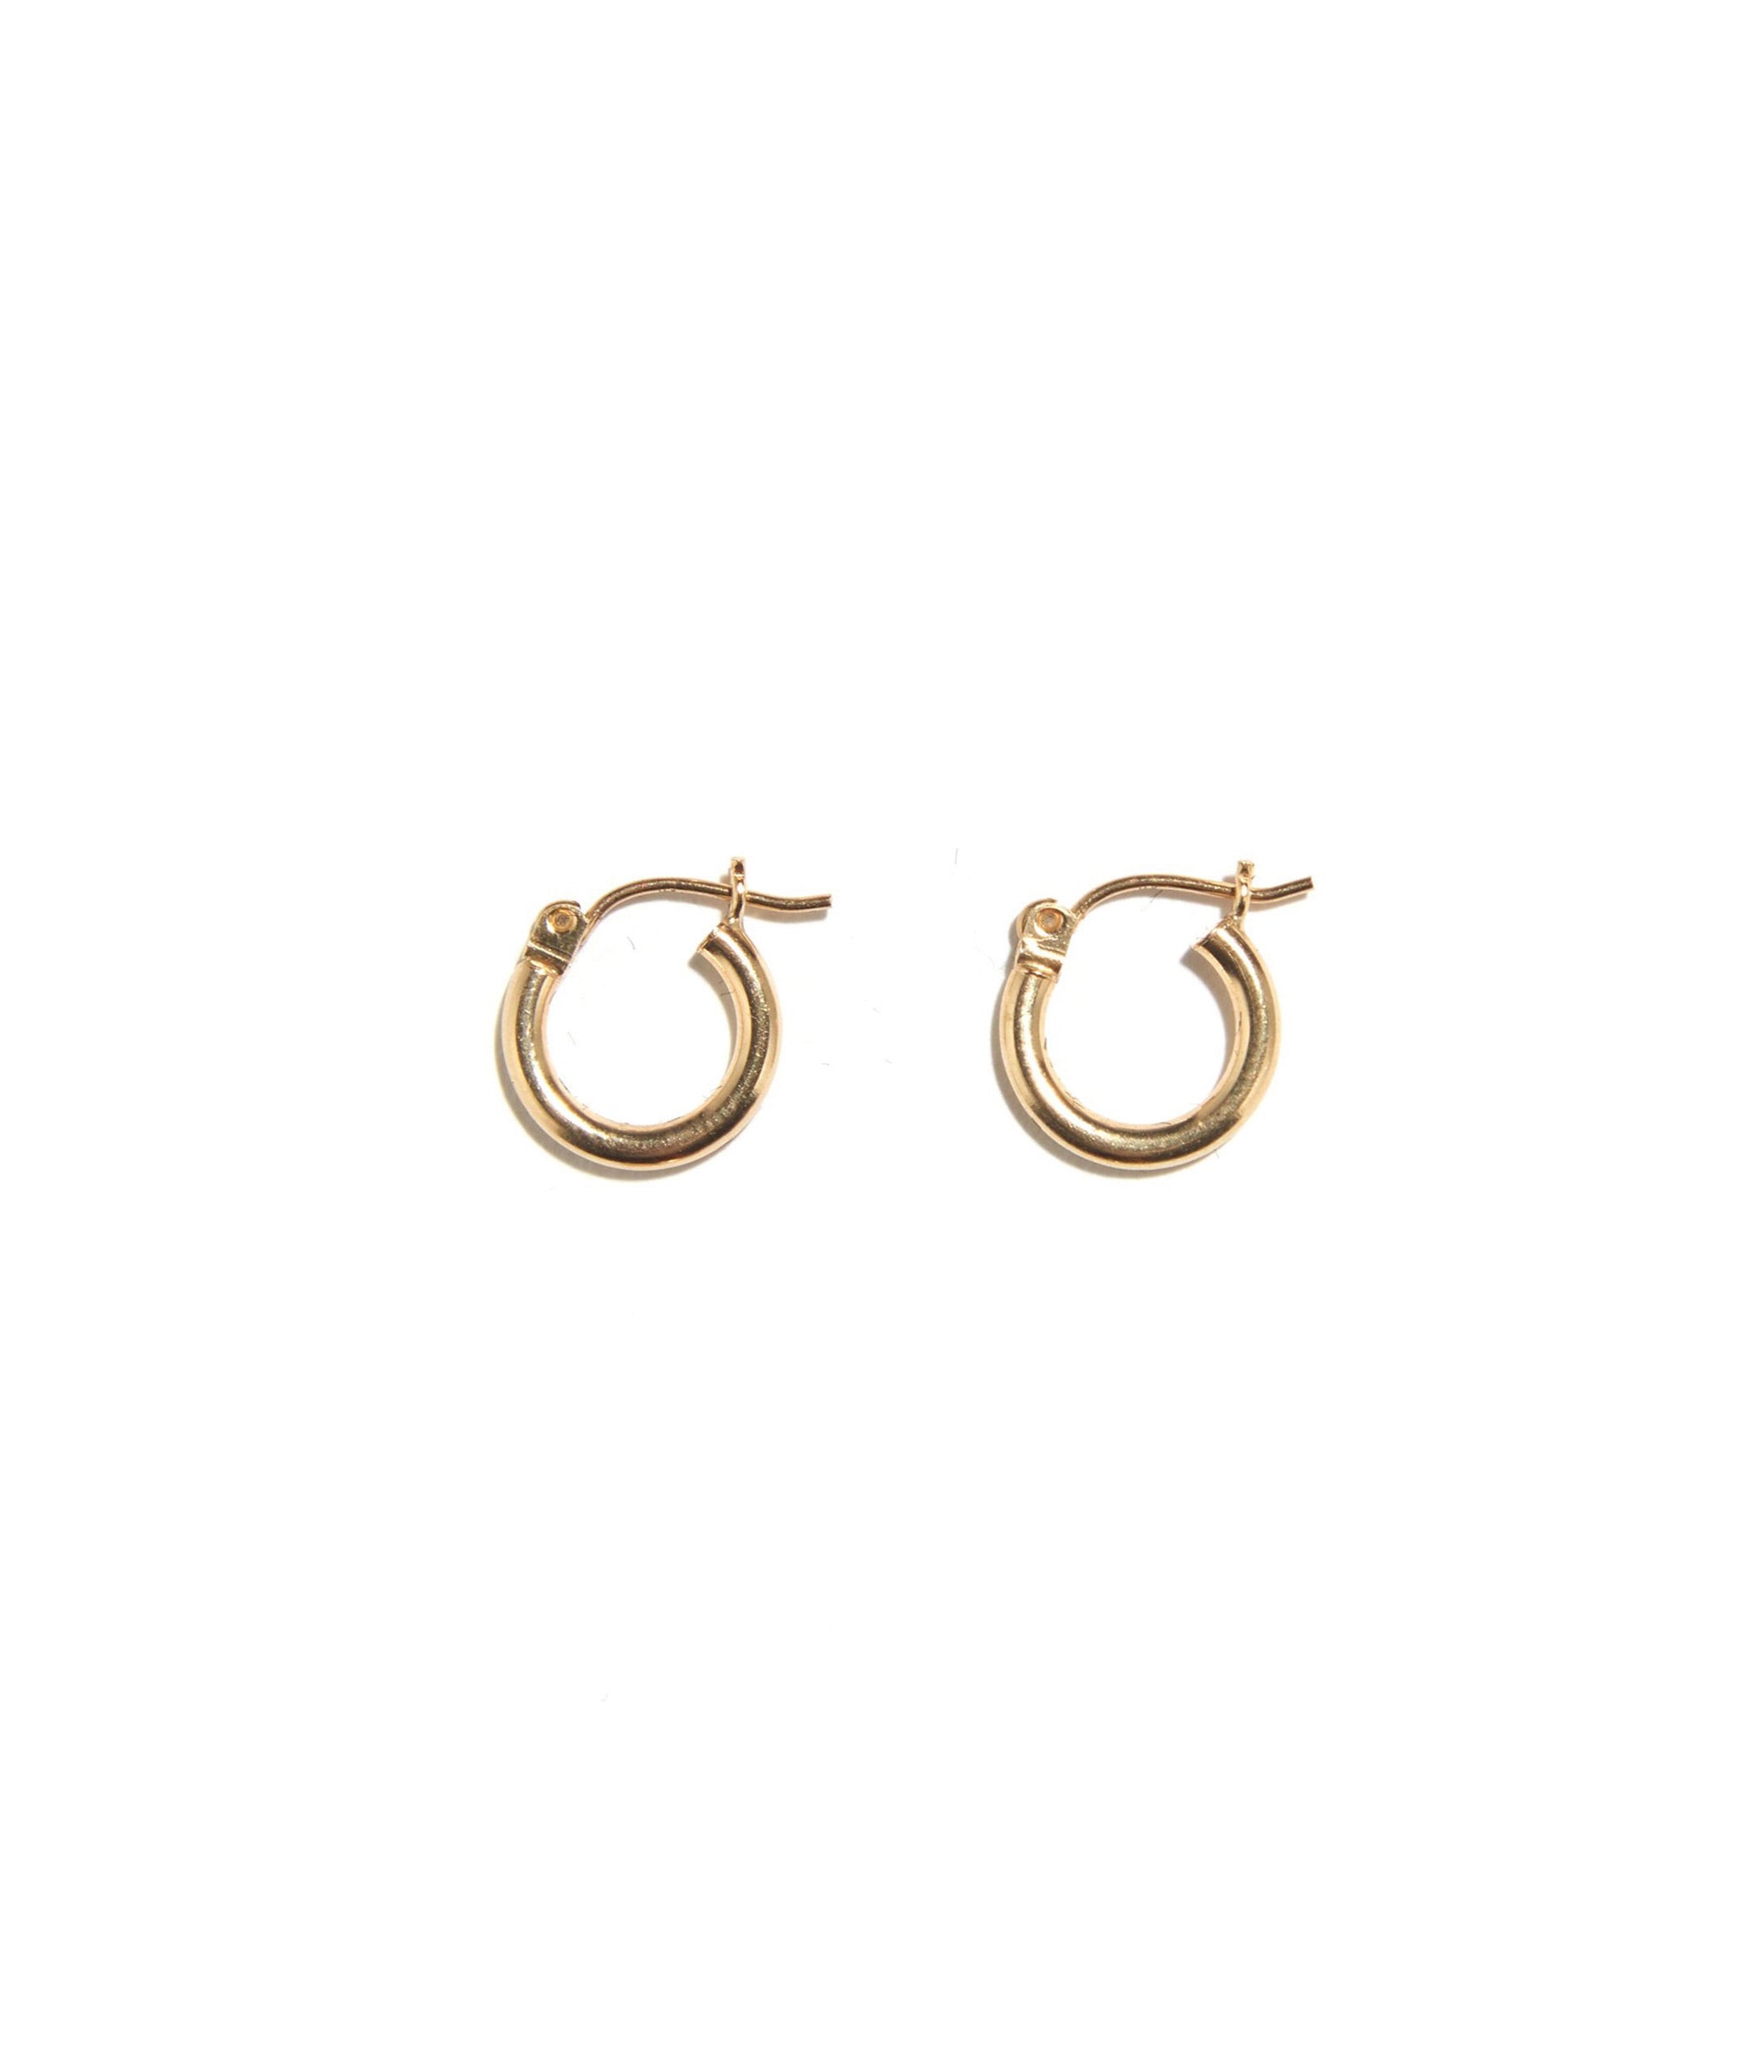 Pair of 12mm sized 14k gold hoop earrings.